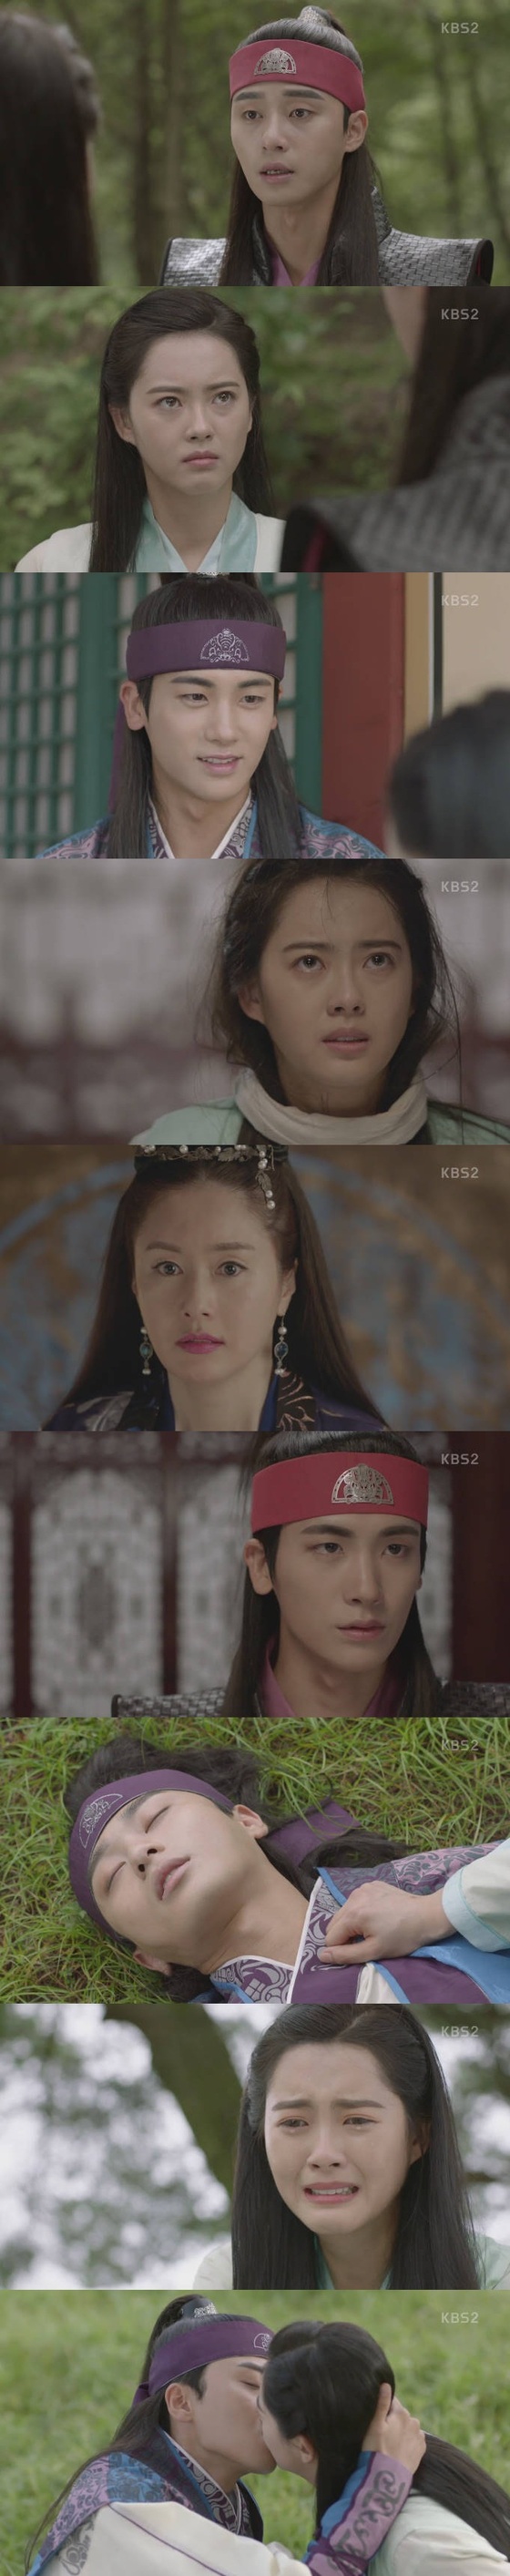 박서준과 고아라가 서로의 마음을 확인했다. © News1star / KBS2 '화랑' 캡처